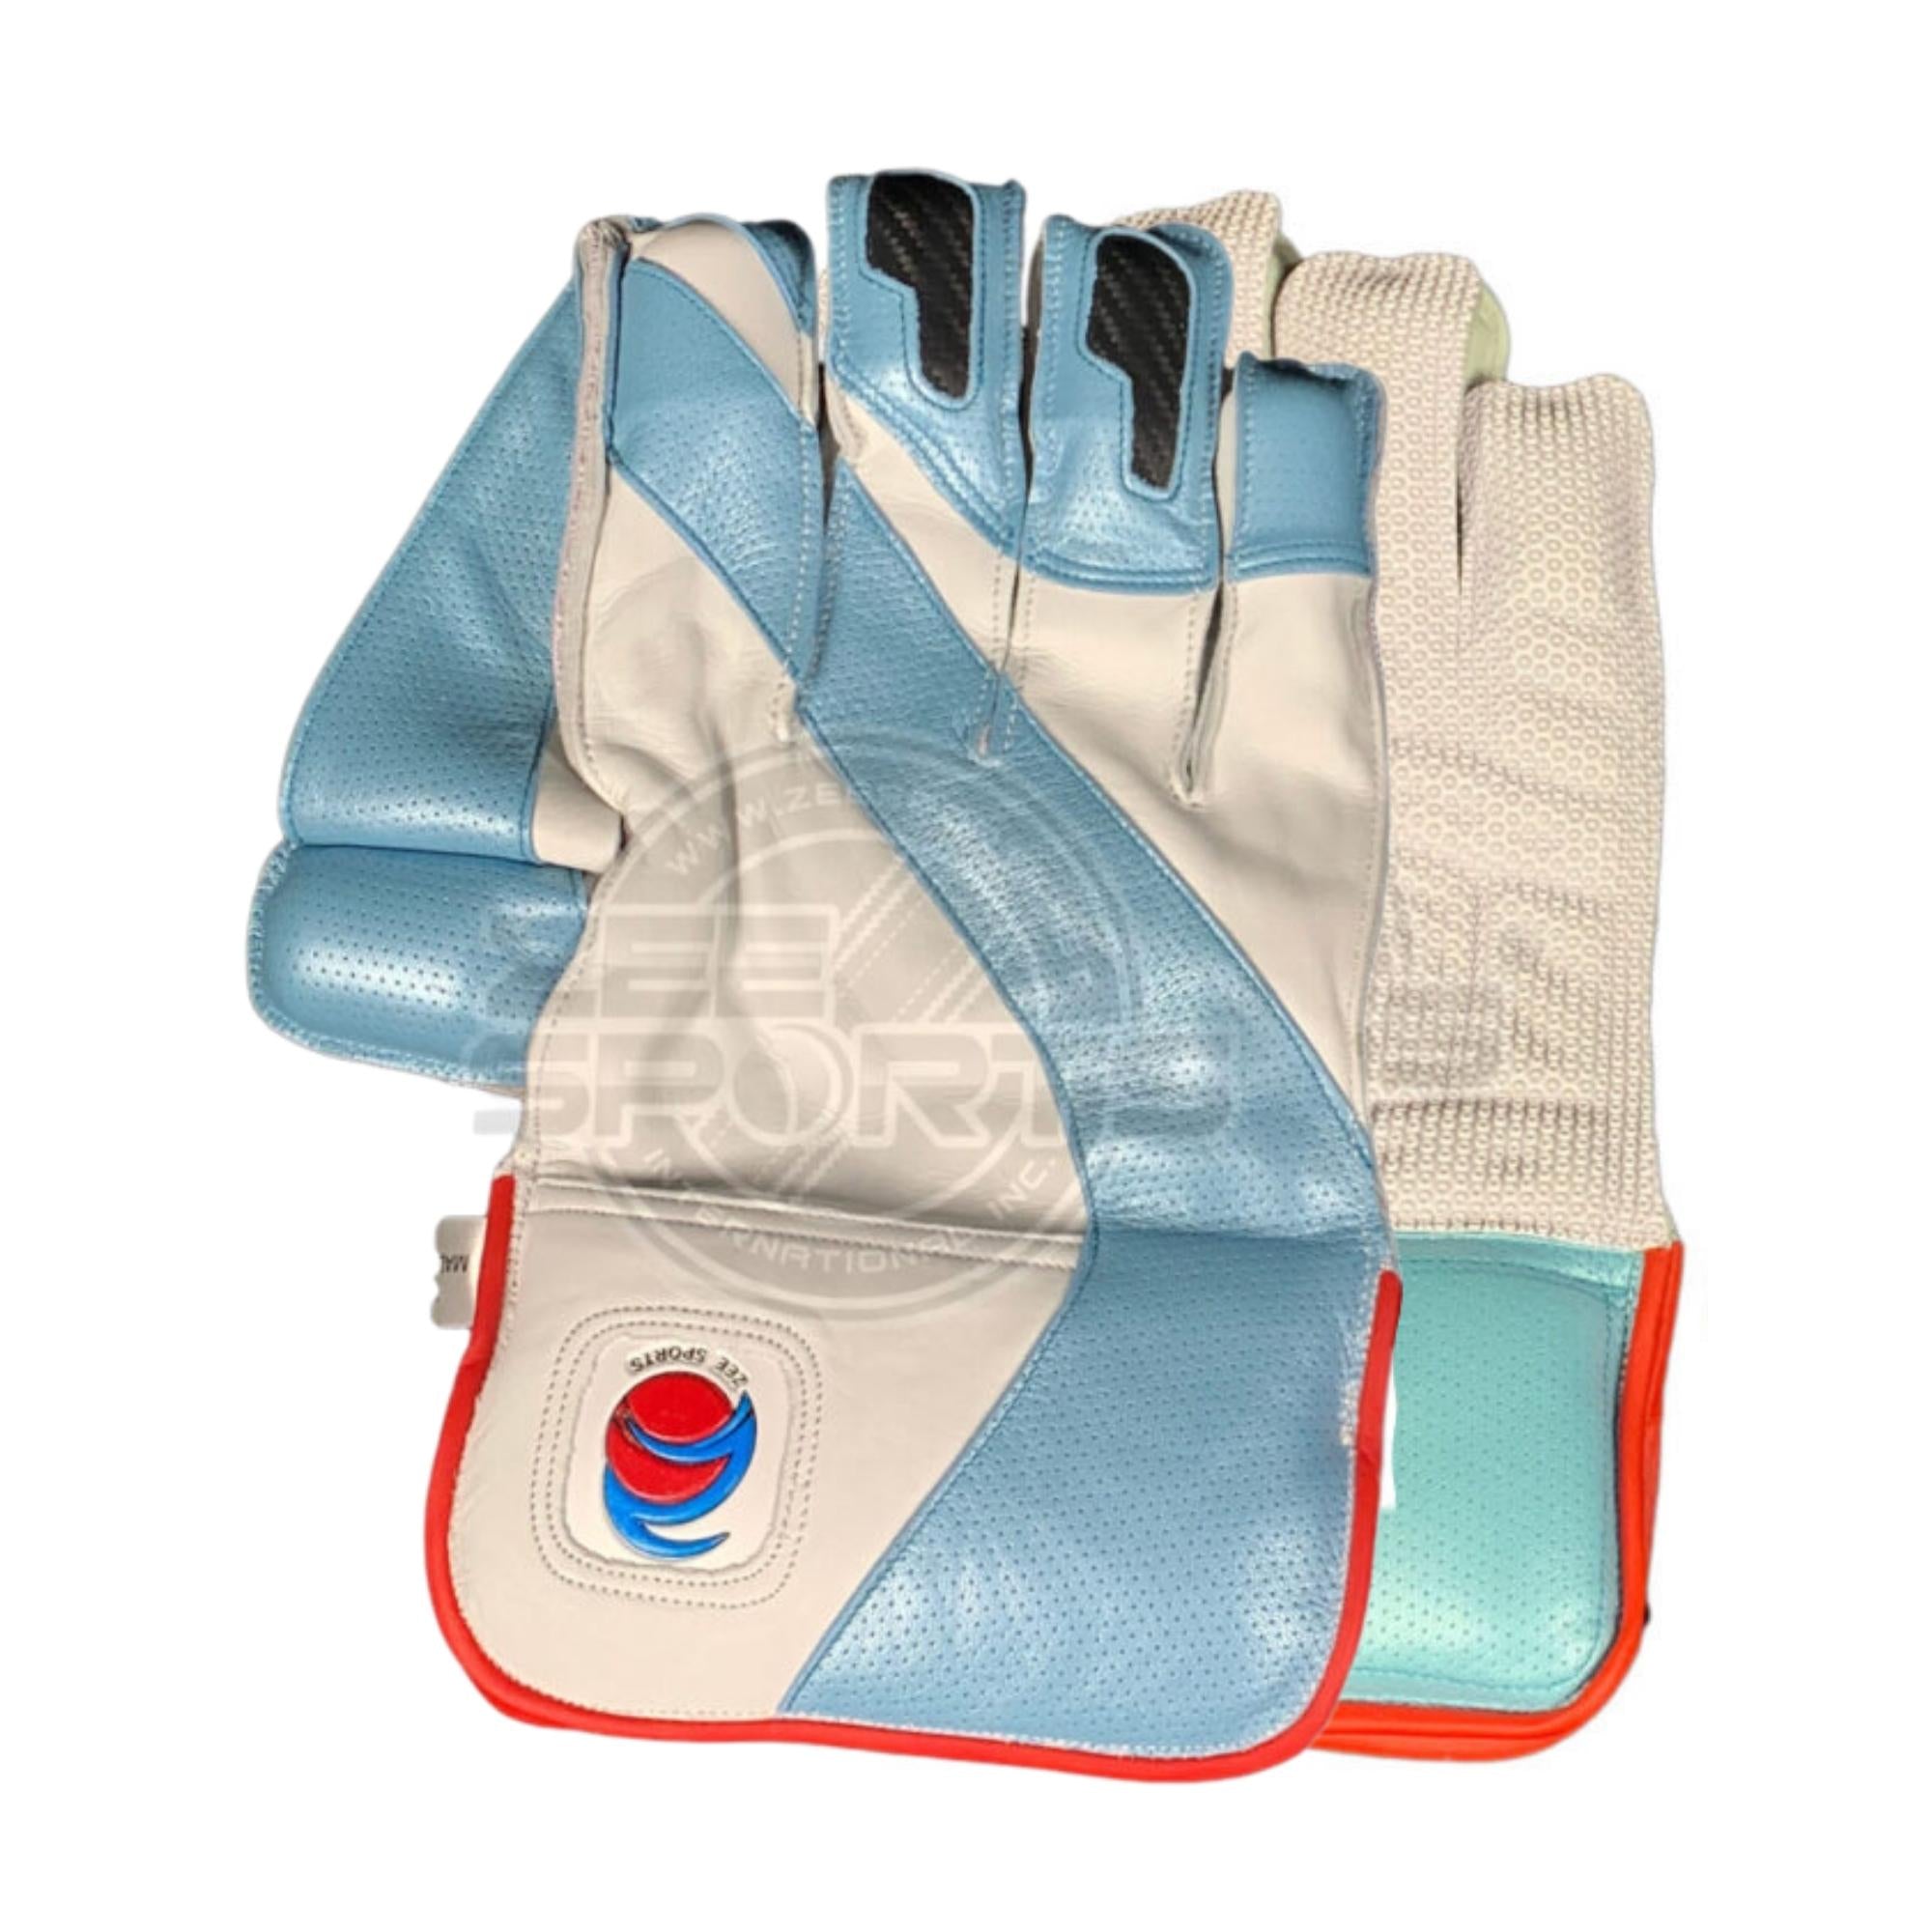 Zee Sports Wicket Keeping Gloves